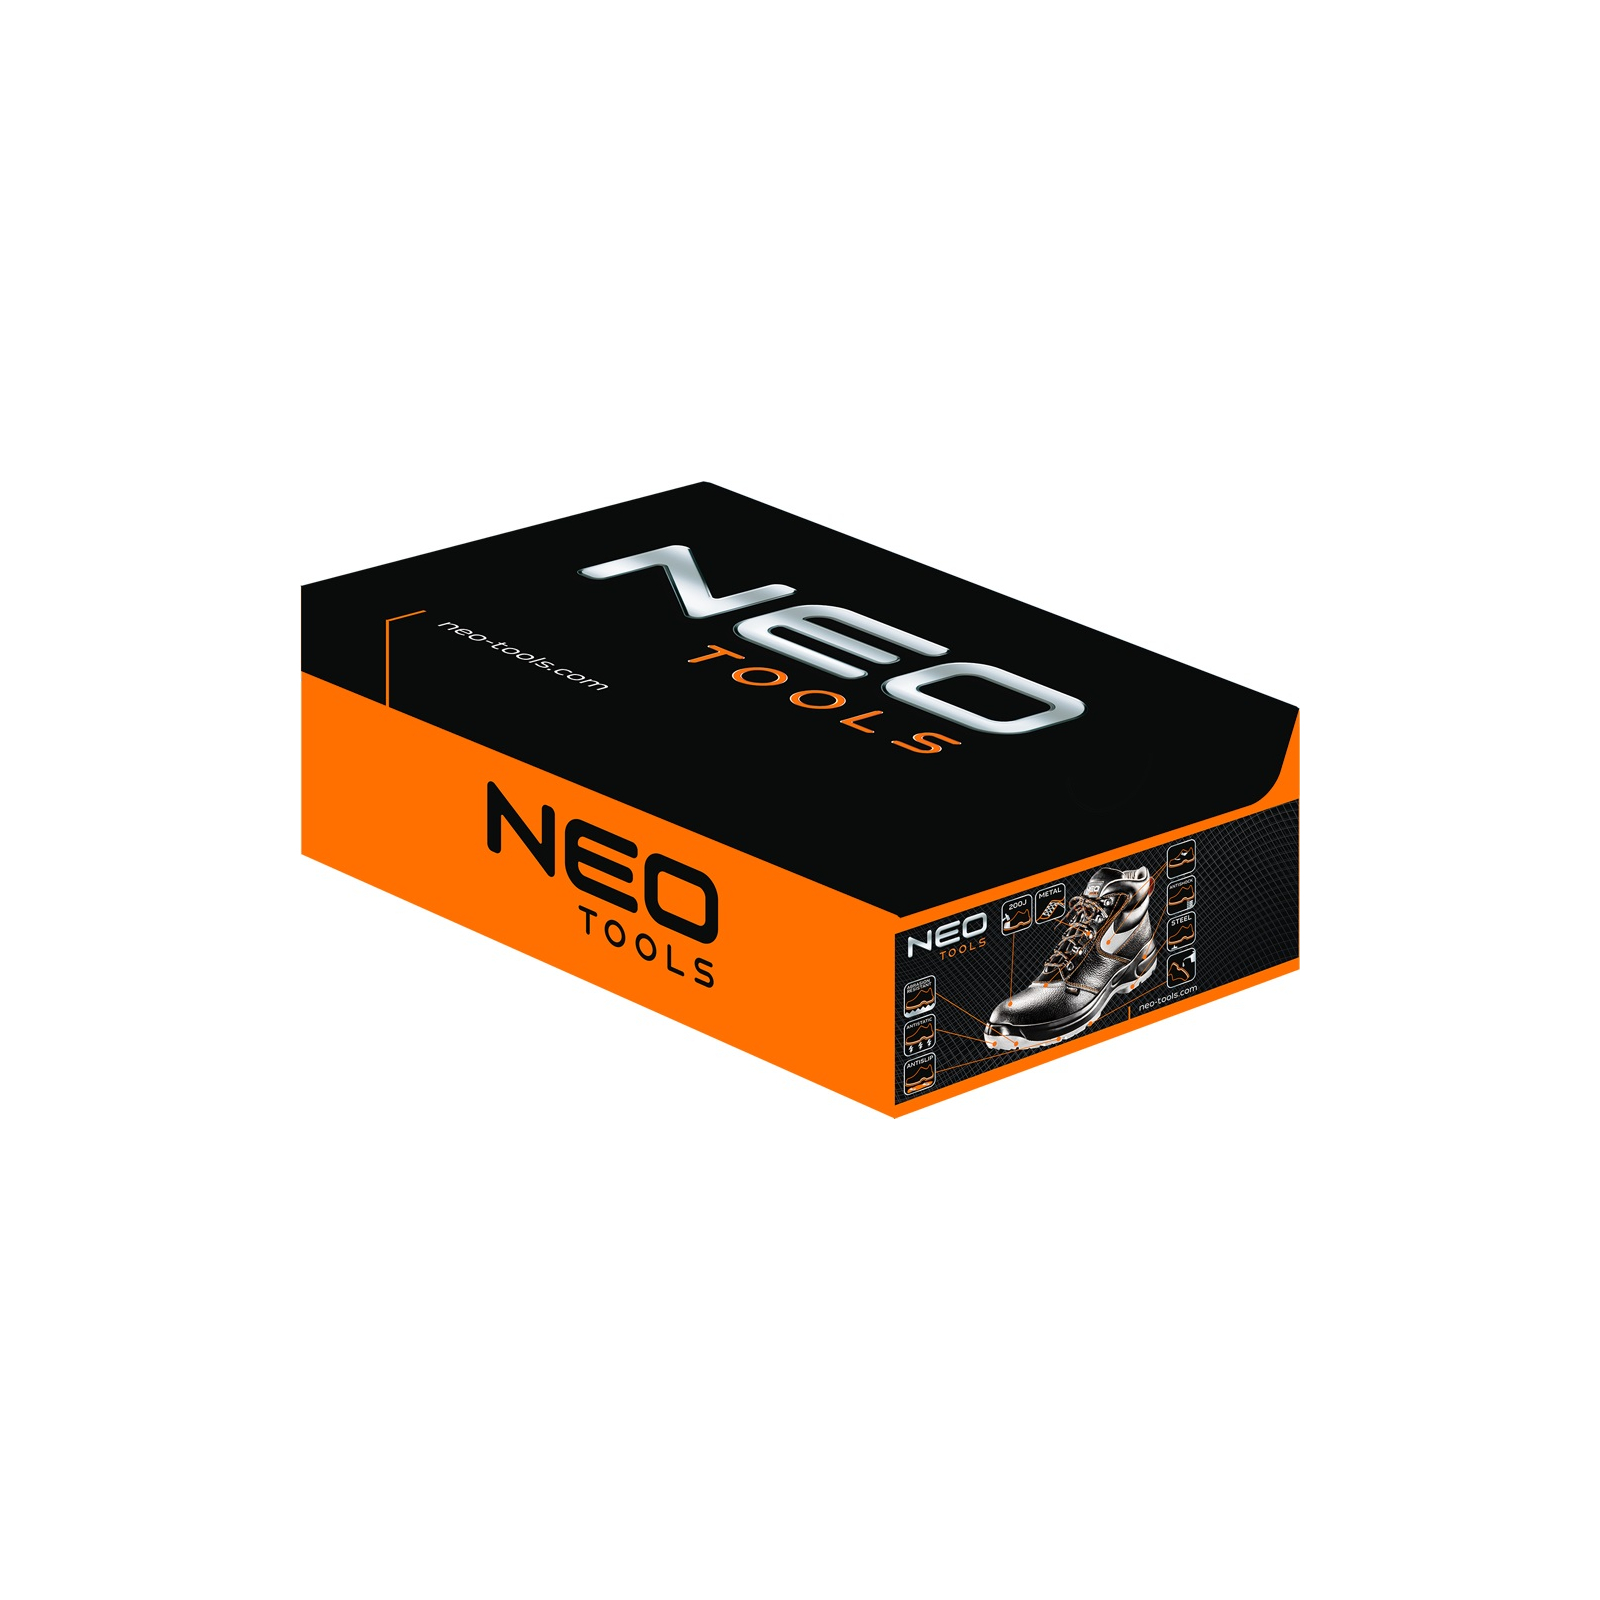 Ботинки рабочие Neo Tools кожа, антипрокол, подносок до 200 Дж, S1P SRA, СЕ, p.43 (82-024) изображение 2